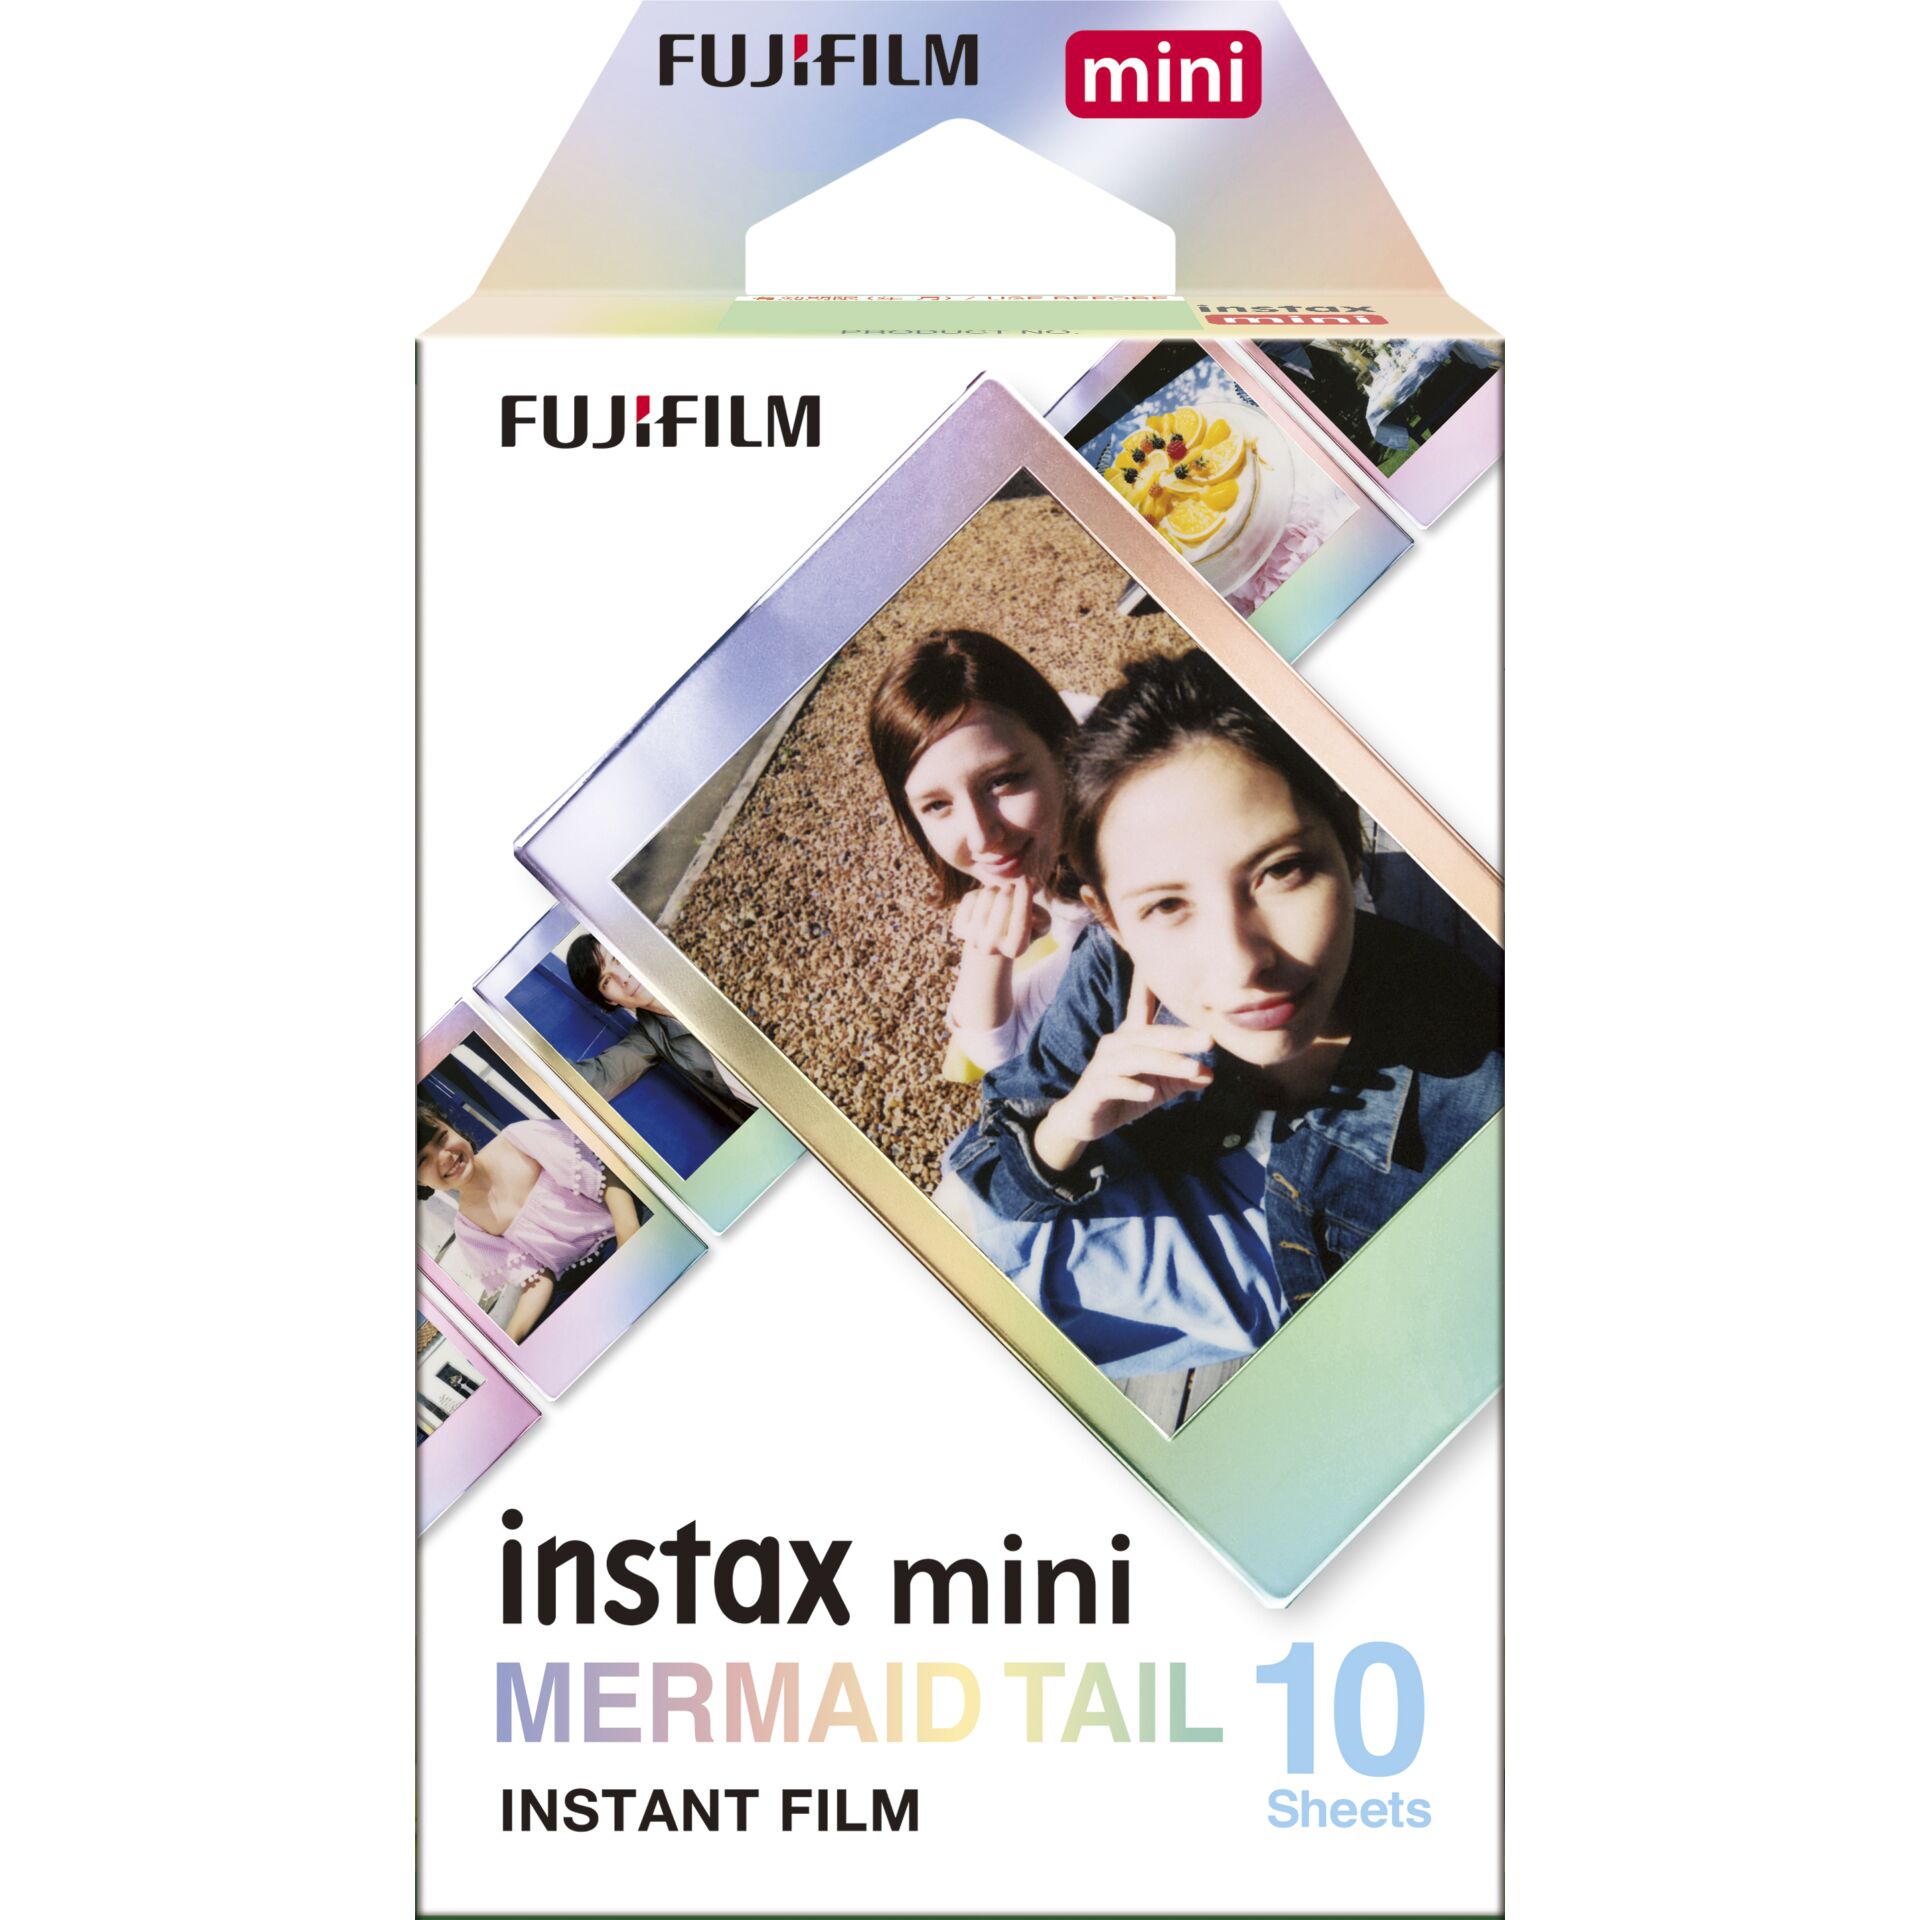 Fujifilm instax mini Film Mermaid Tail